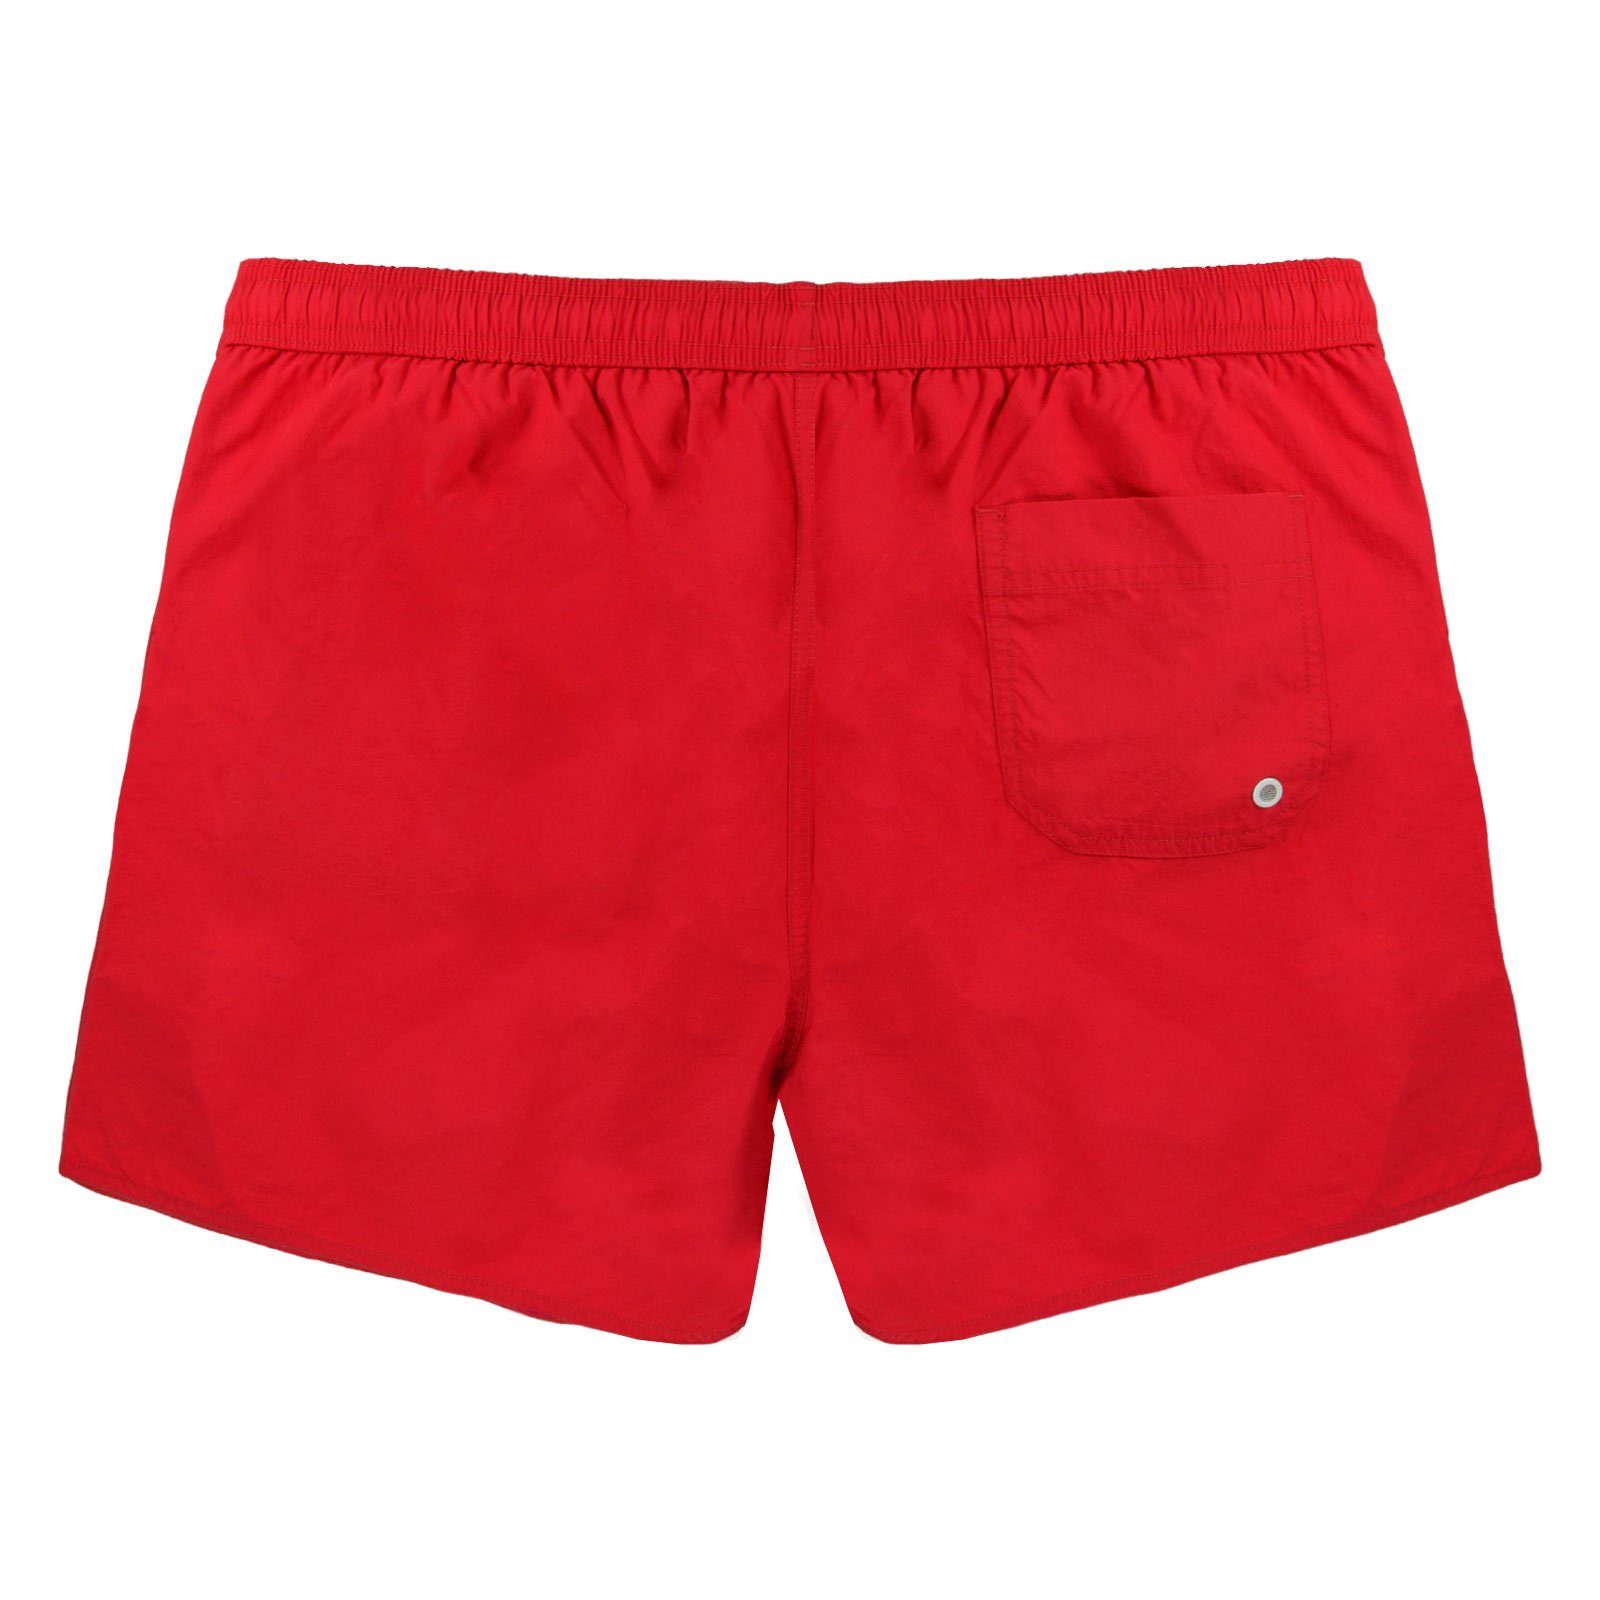 Markenlogo am ruby mit Mid kleinen Bein Emporio Boxer 00173 red linken Armani Beachwear Boxer-Badehose